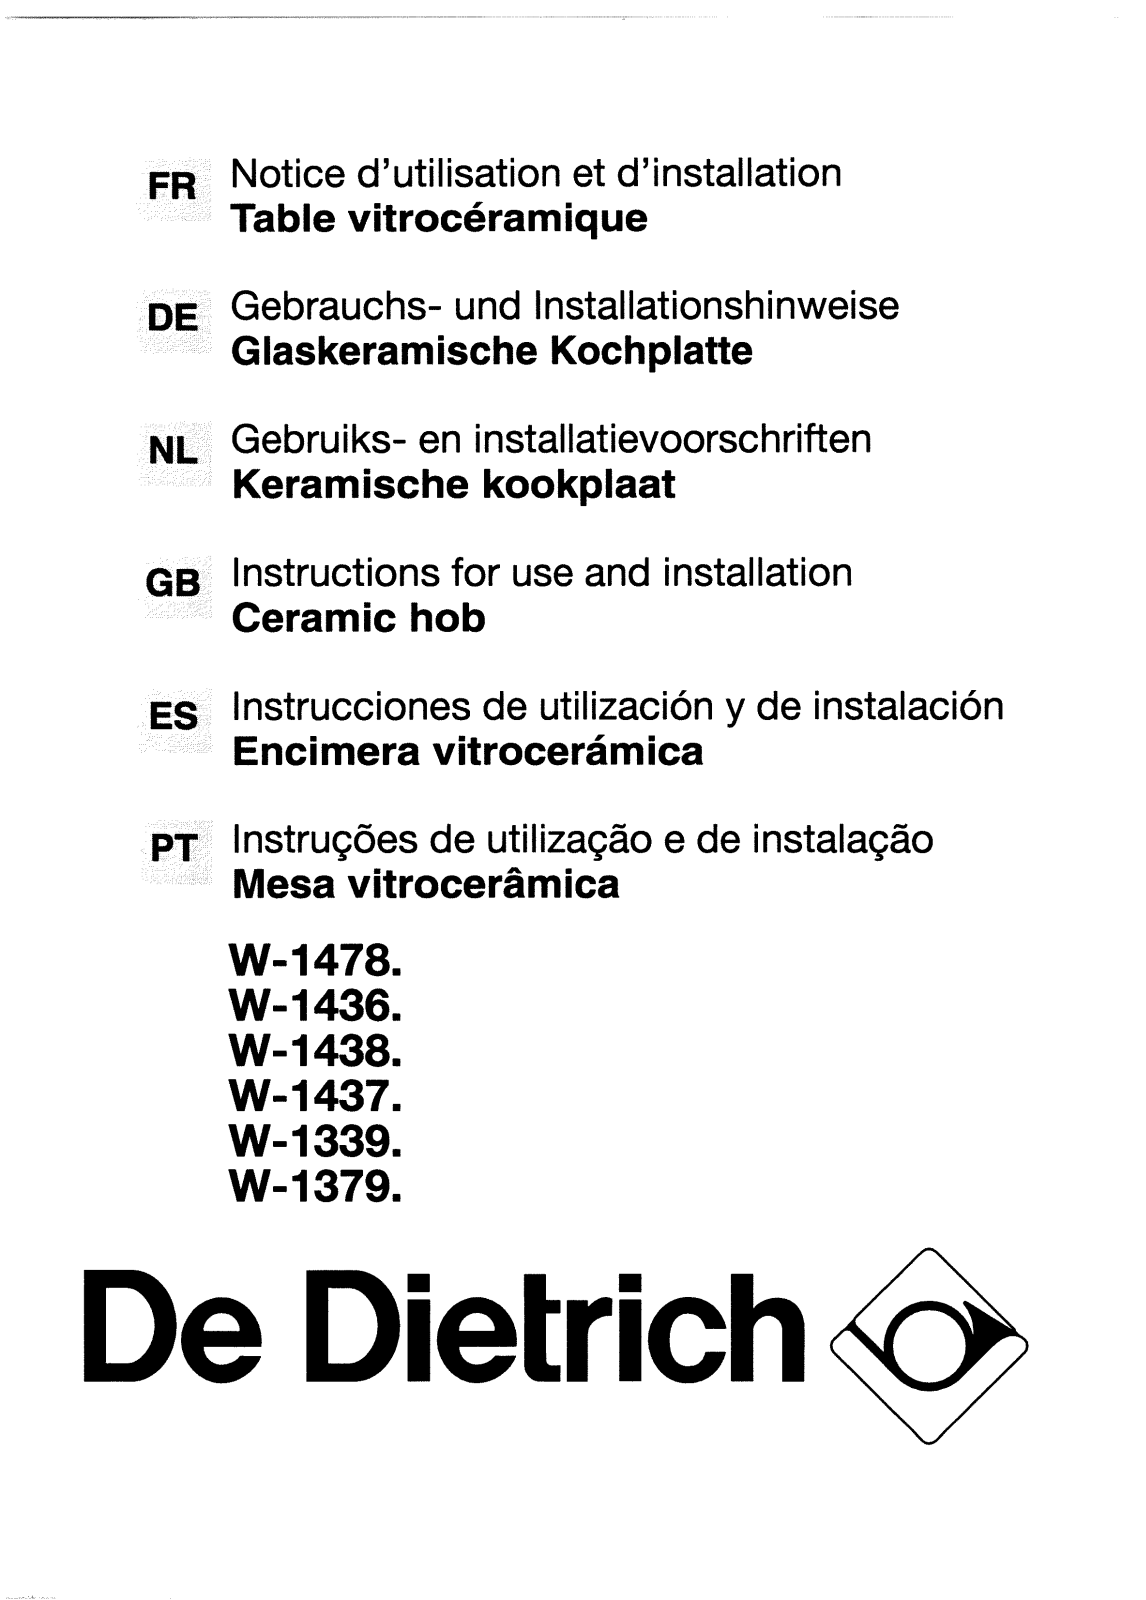 De dietrich WM1436E1, WW1436E1, WN1438E1, WN1379E1, WM1339E1 User Manual